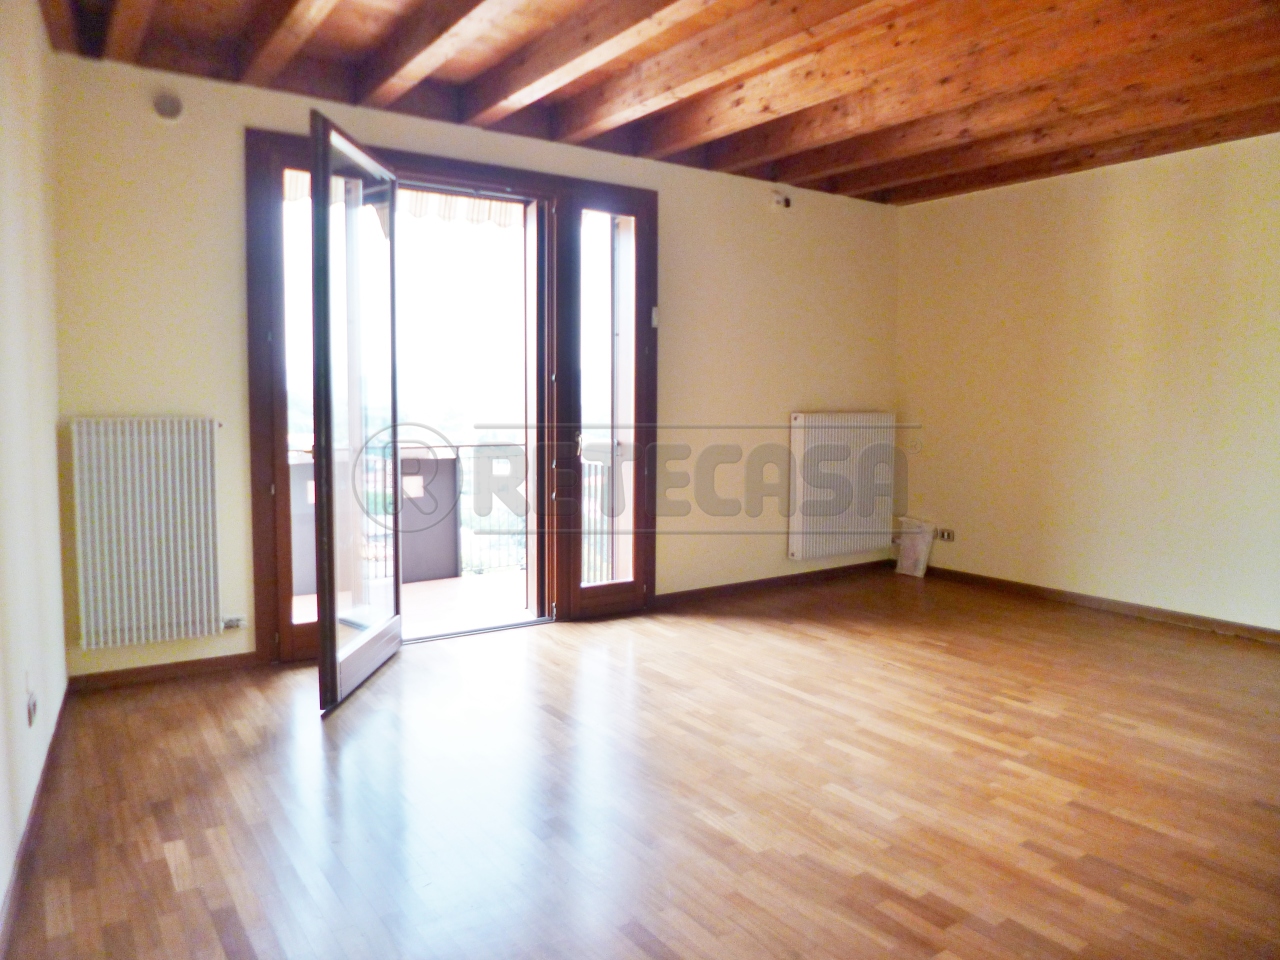 Appartamento in vendita a Montebello Vicentino, 5 locali, prezzo € 160.000 | PortaleAgenzieImmobiliari.it